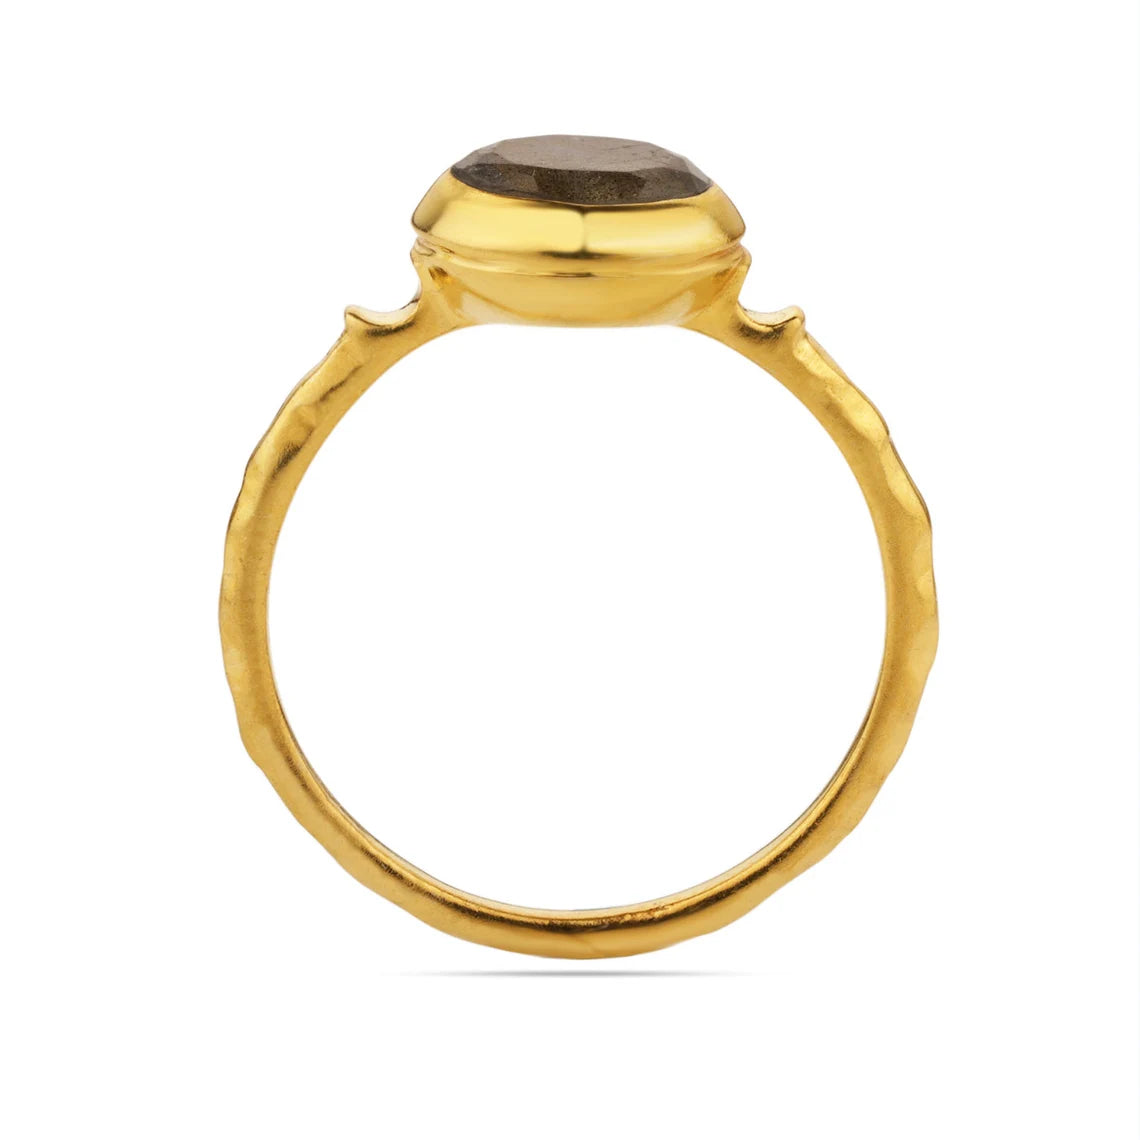 Labradorite Ring - Statement Rings - Stackable Rings - Labradorite - Gold Ring